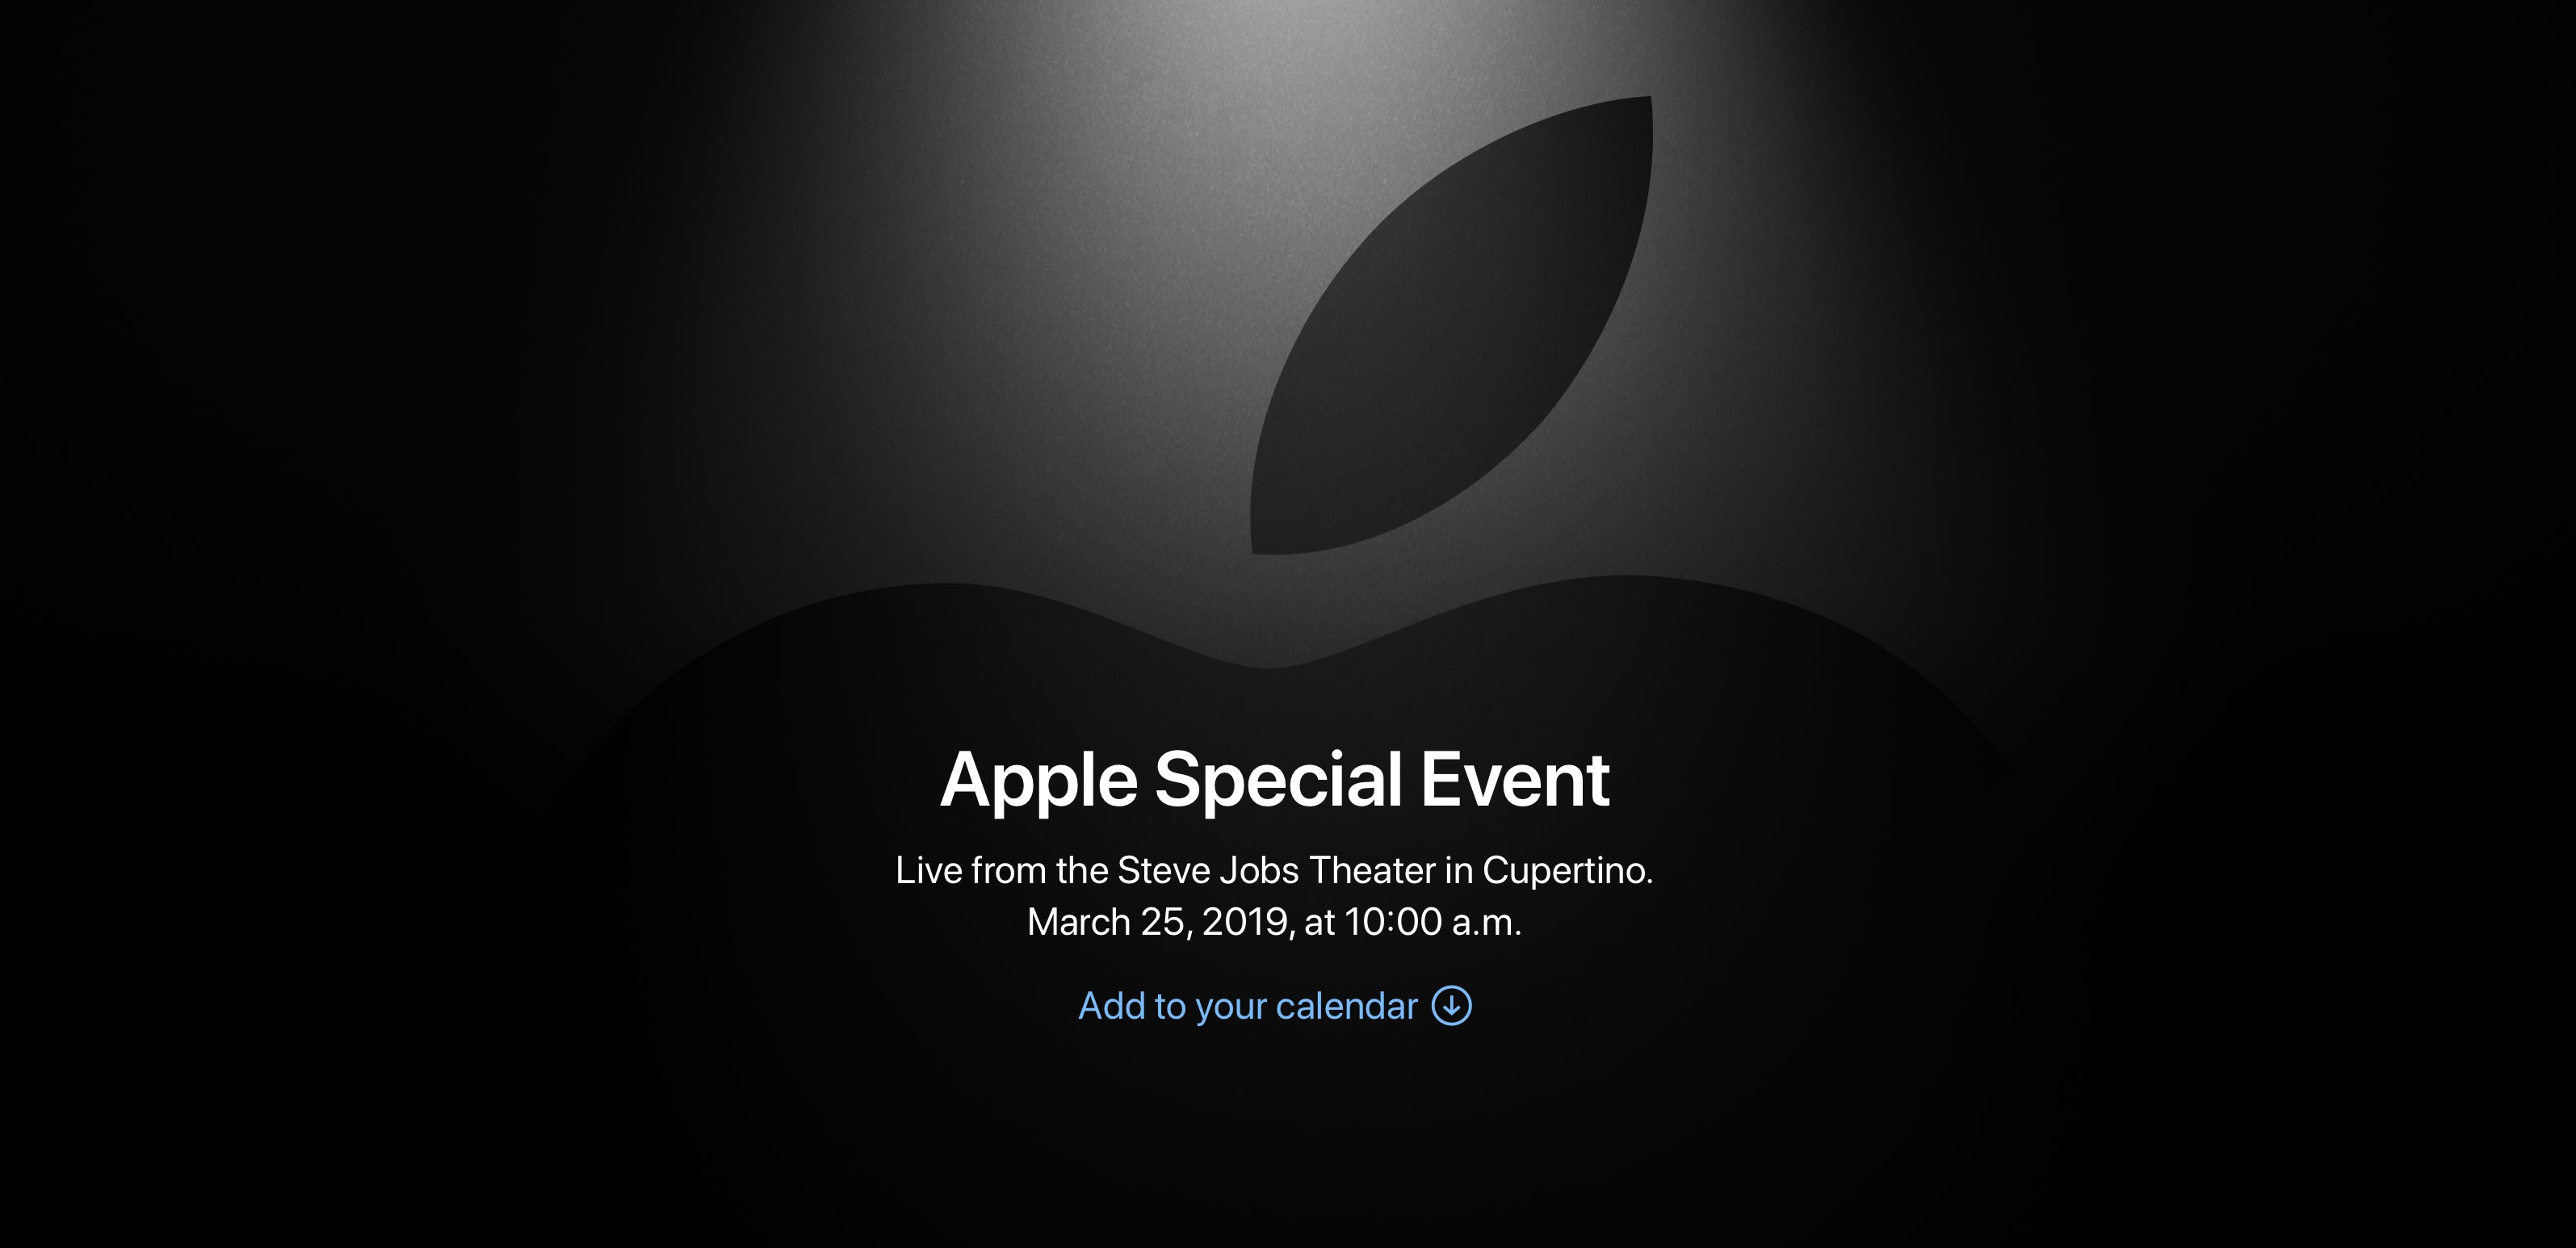 Hướng dẫn xem live sự kiện Apple Special Event vào 12h đêm nay 25/3